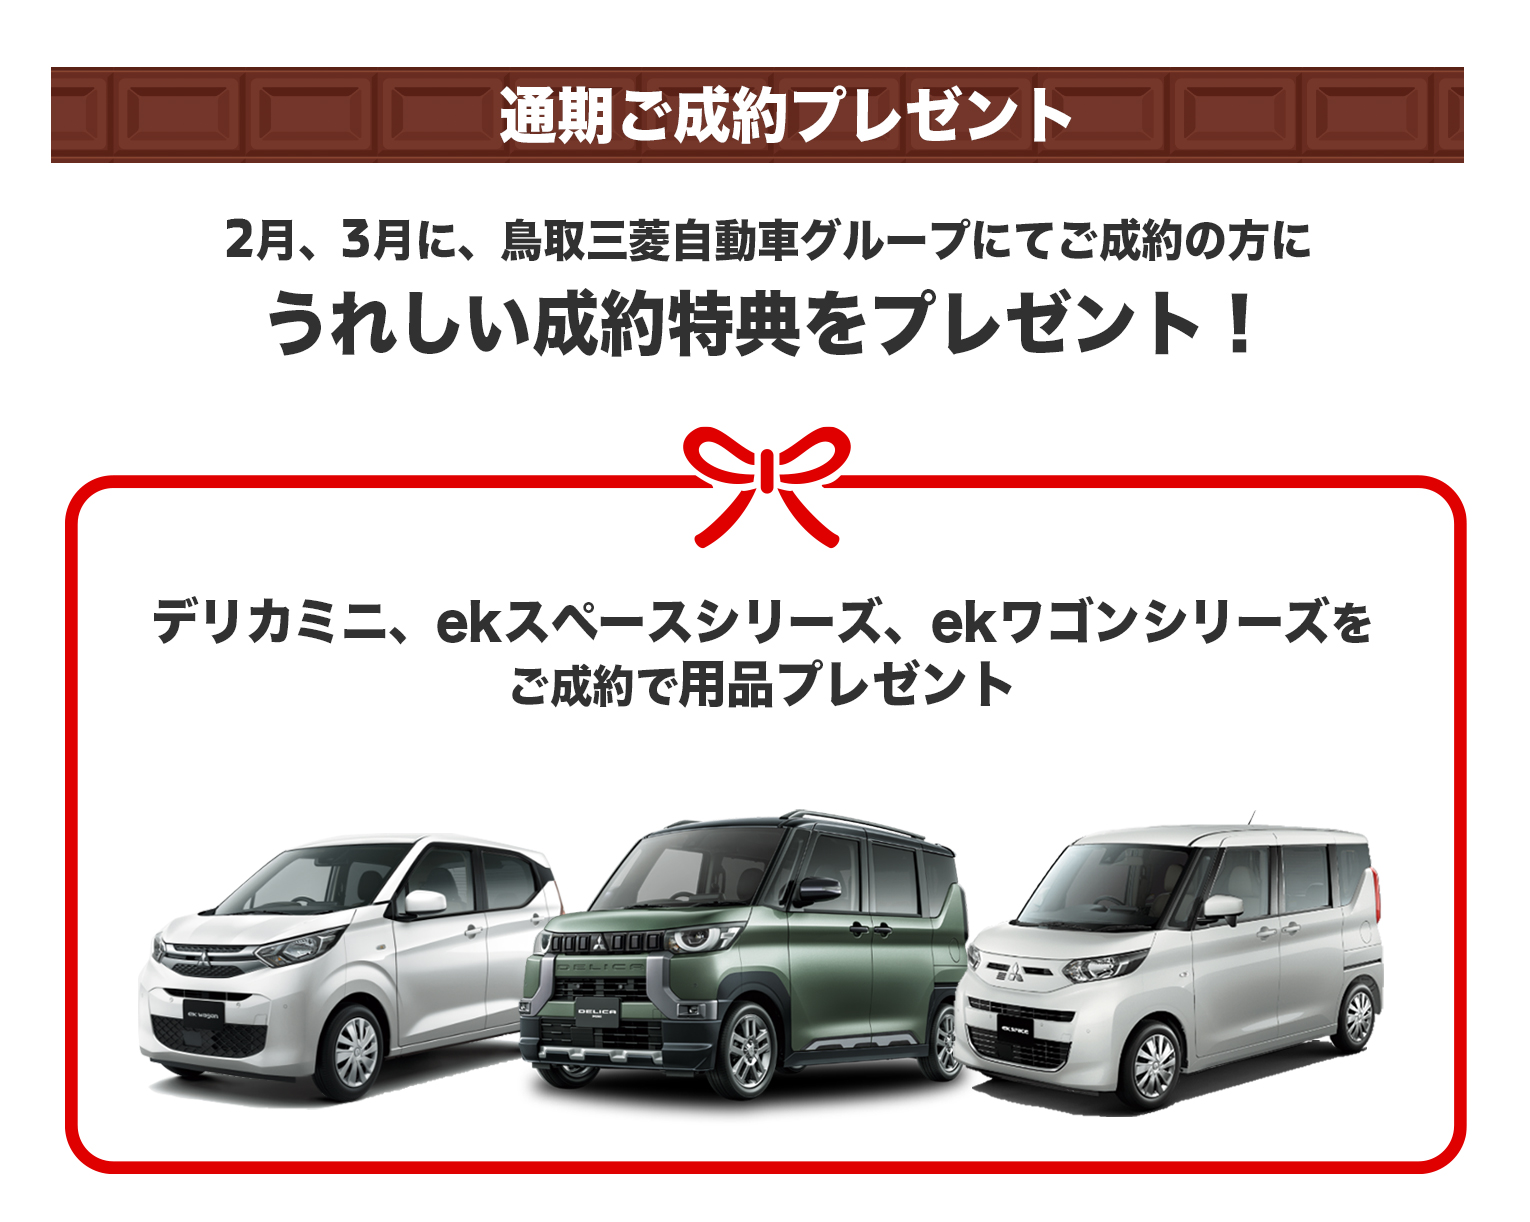 2月、3月に、鳥取三菱自動車グループにてご成約の方にうれしい成約特典をプレゼント！デリカミニ、ekスペースシリーズ、ekワゴンシリーズをご成約で用品プレゼント